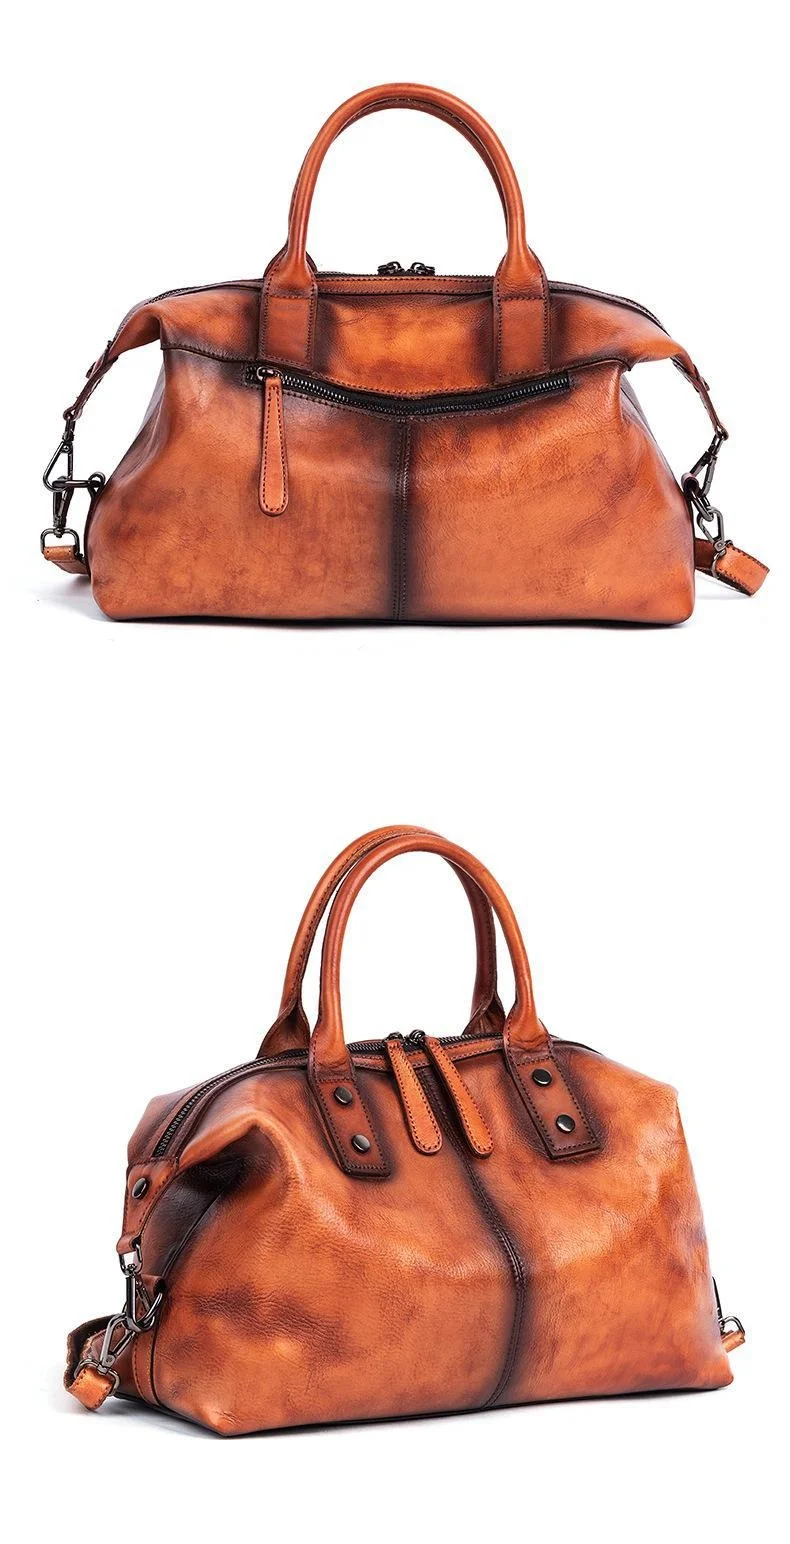 2021 New Hand Painted Women Handbag Luxury Genuine Cowhide Leather Dumpling Bag Large Capacity Vintage Top-handle Bag For Female